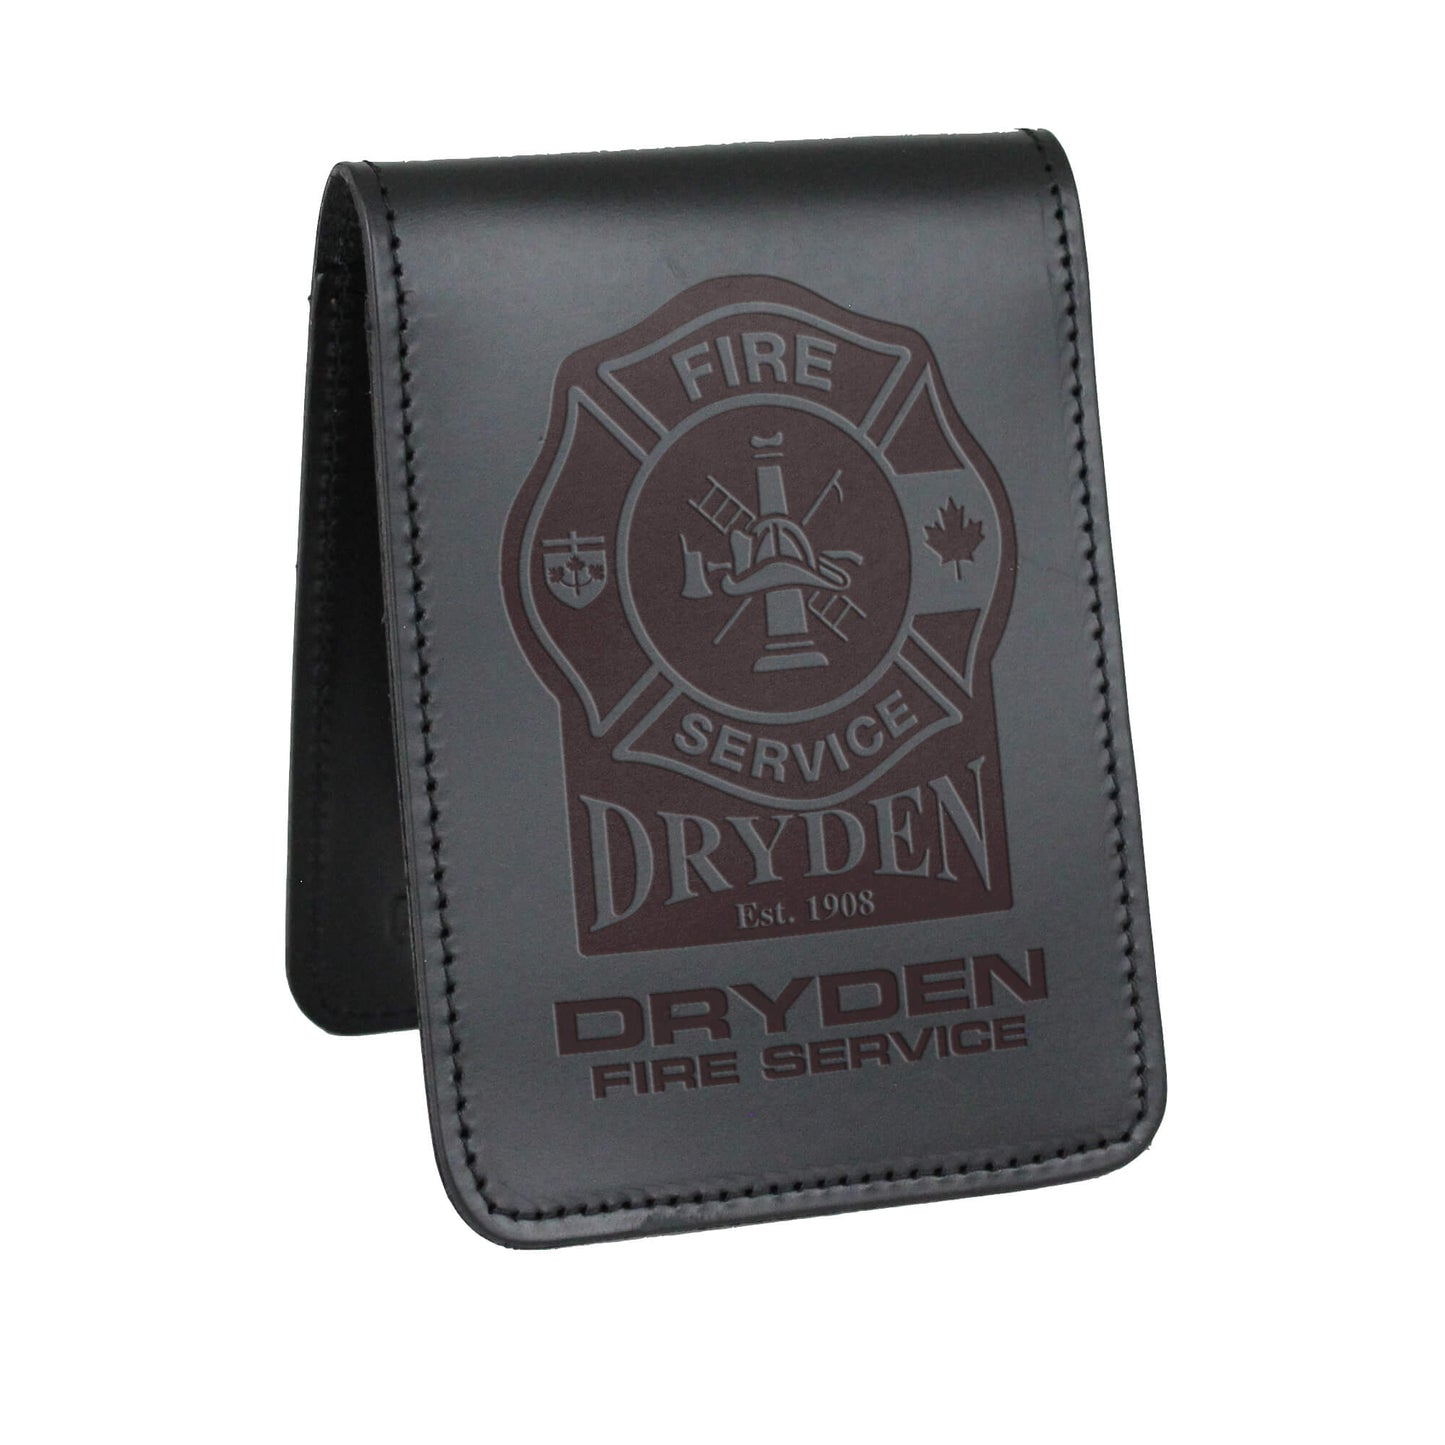 Dryden Fire Service Notebook Cover